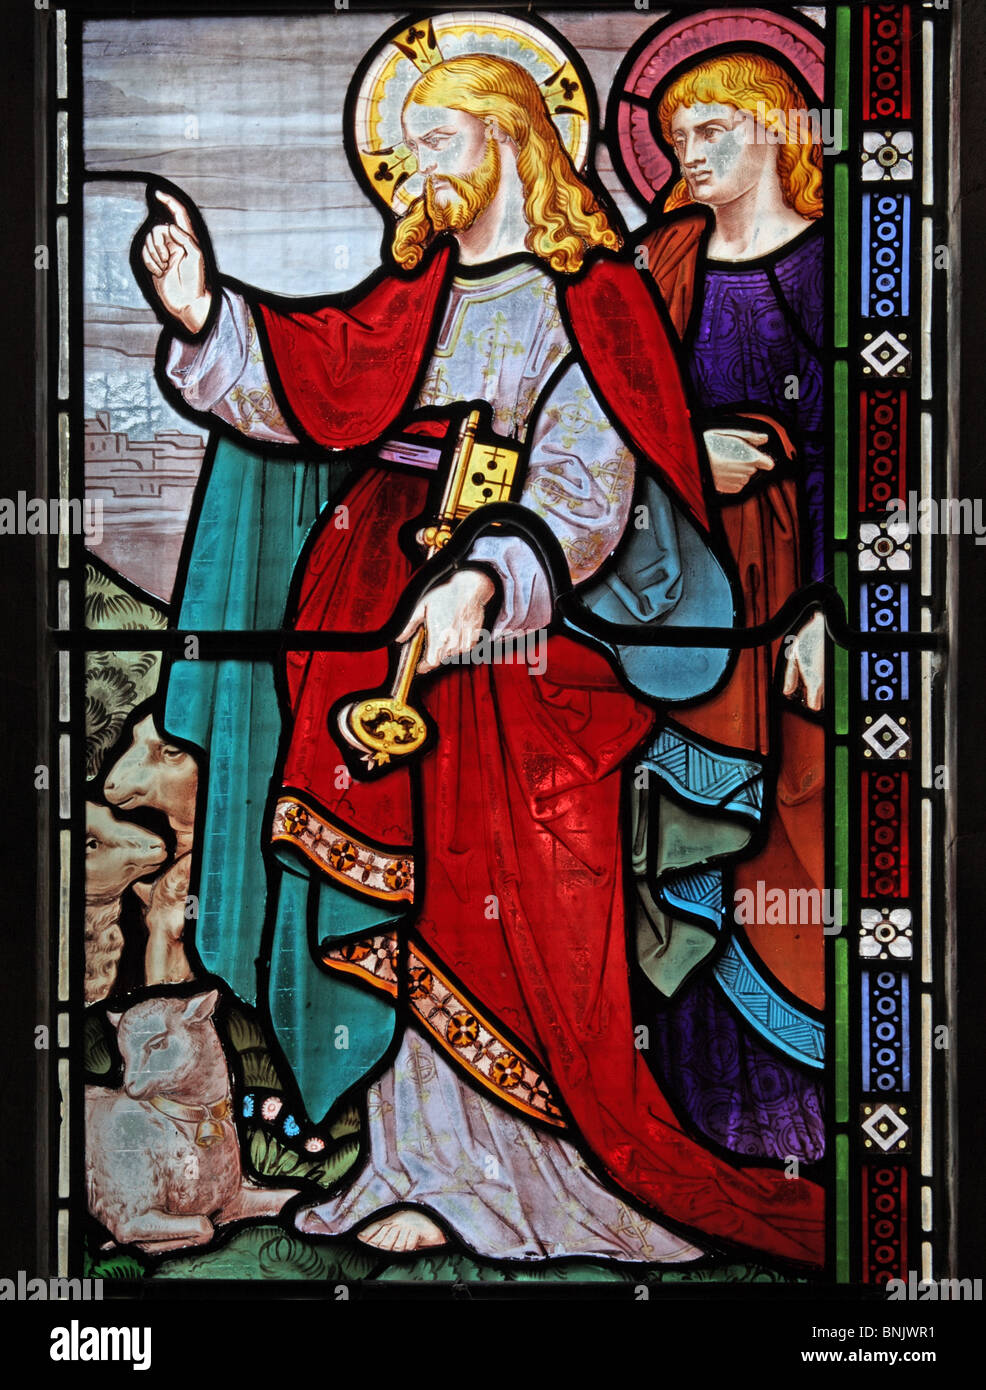 Une vitrail de Frank Holt de Warwick représentant Jésus, Eglise de St Laurence, Lighthorne, Warwickshire, Angleterre. Frais pour Saint Peter. Banque D'Images